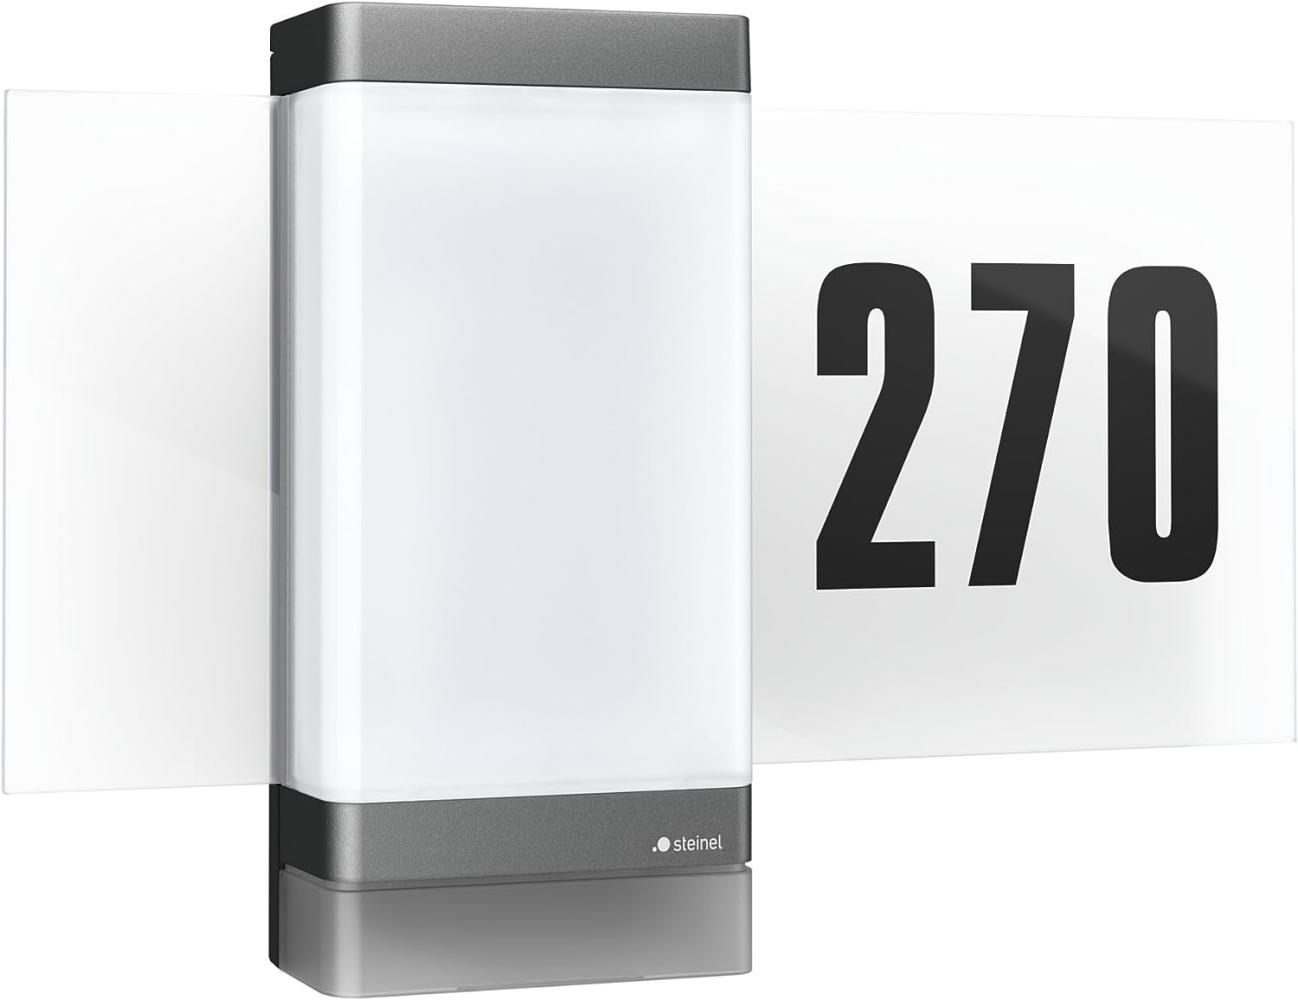 Steinel LED-Außenleuchte L 270 SC digi anthrazit, Bluetooth Mesh, Steinel Connect App, 180°-Bewegungsmelder, mit Hausnummer Bild 1